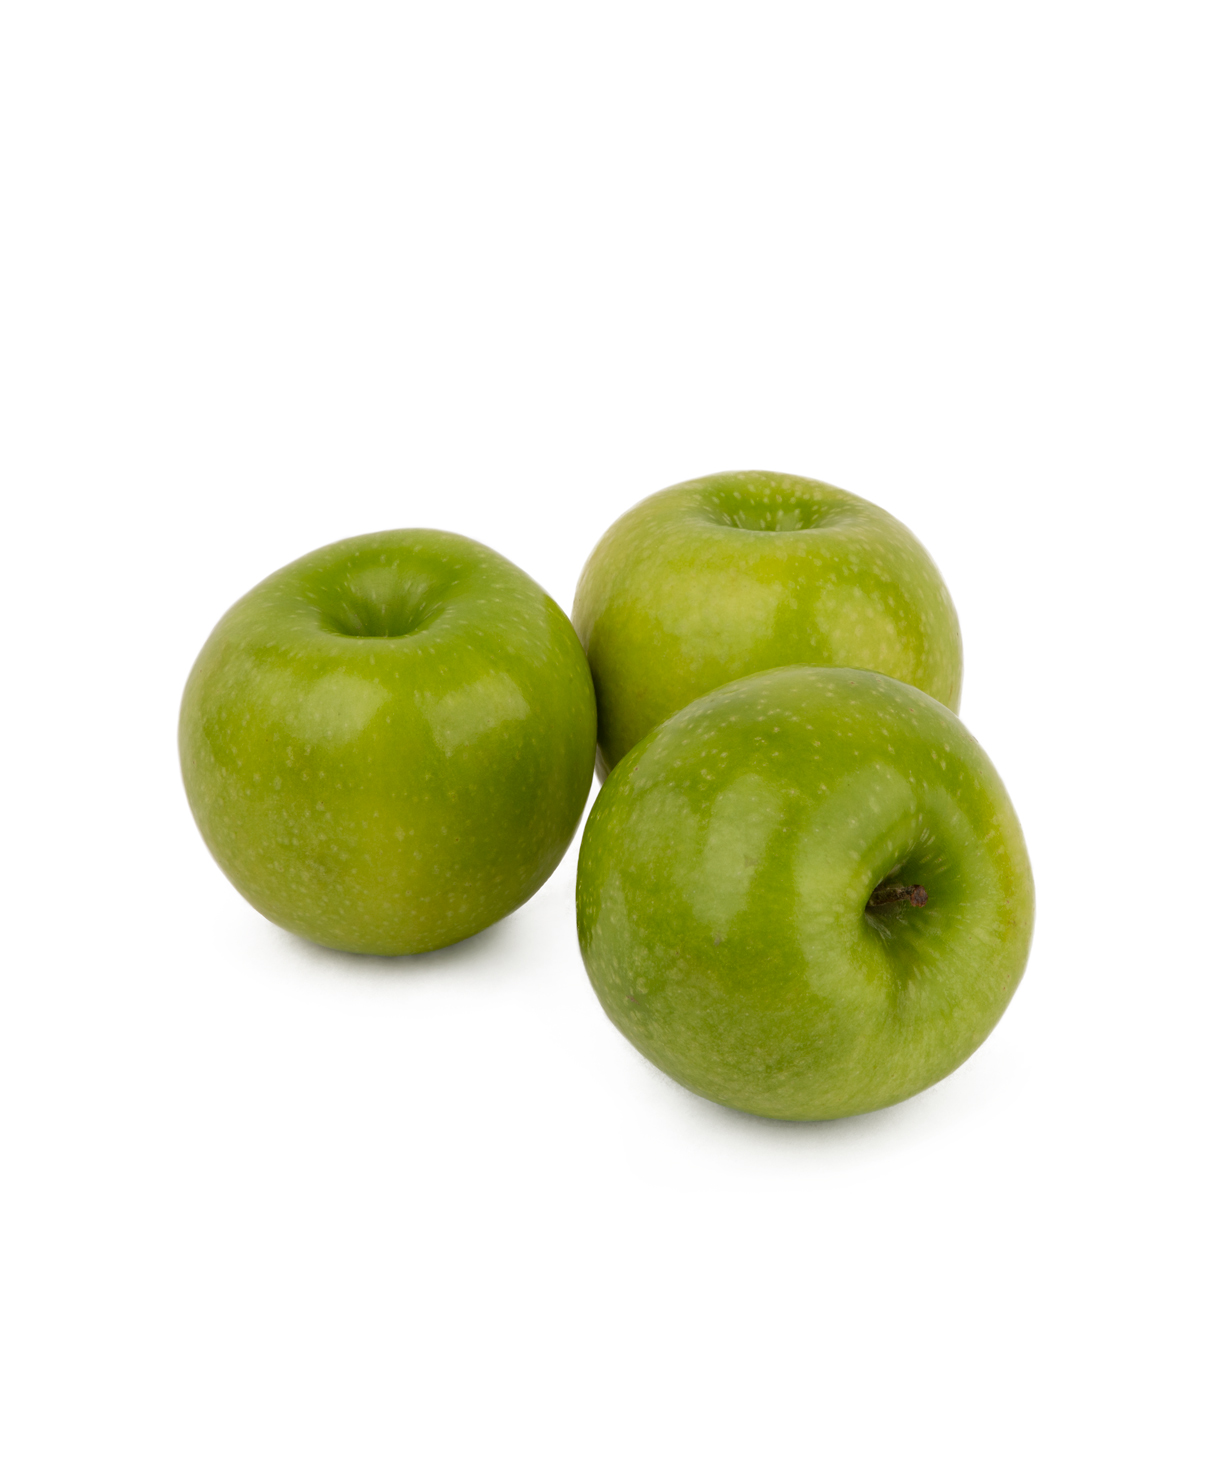 Apples 1 kg